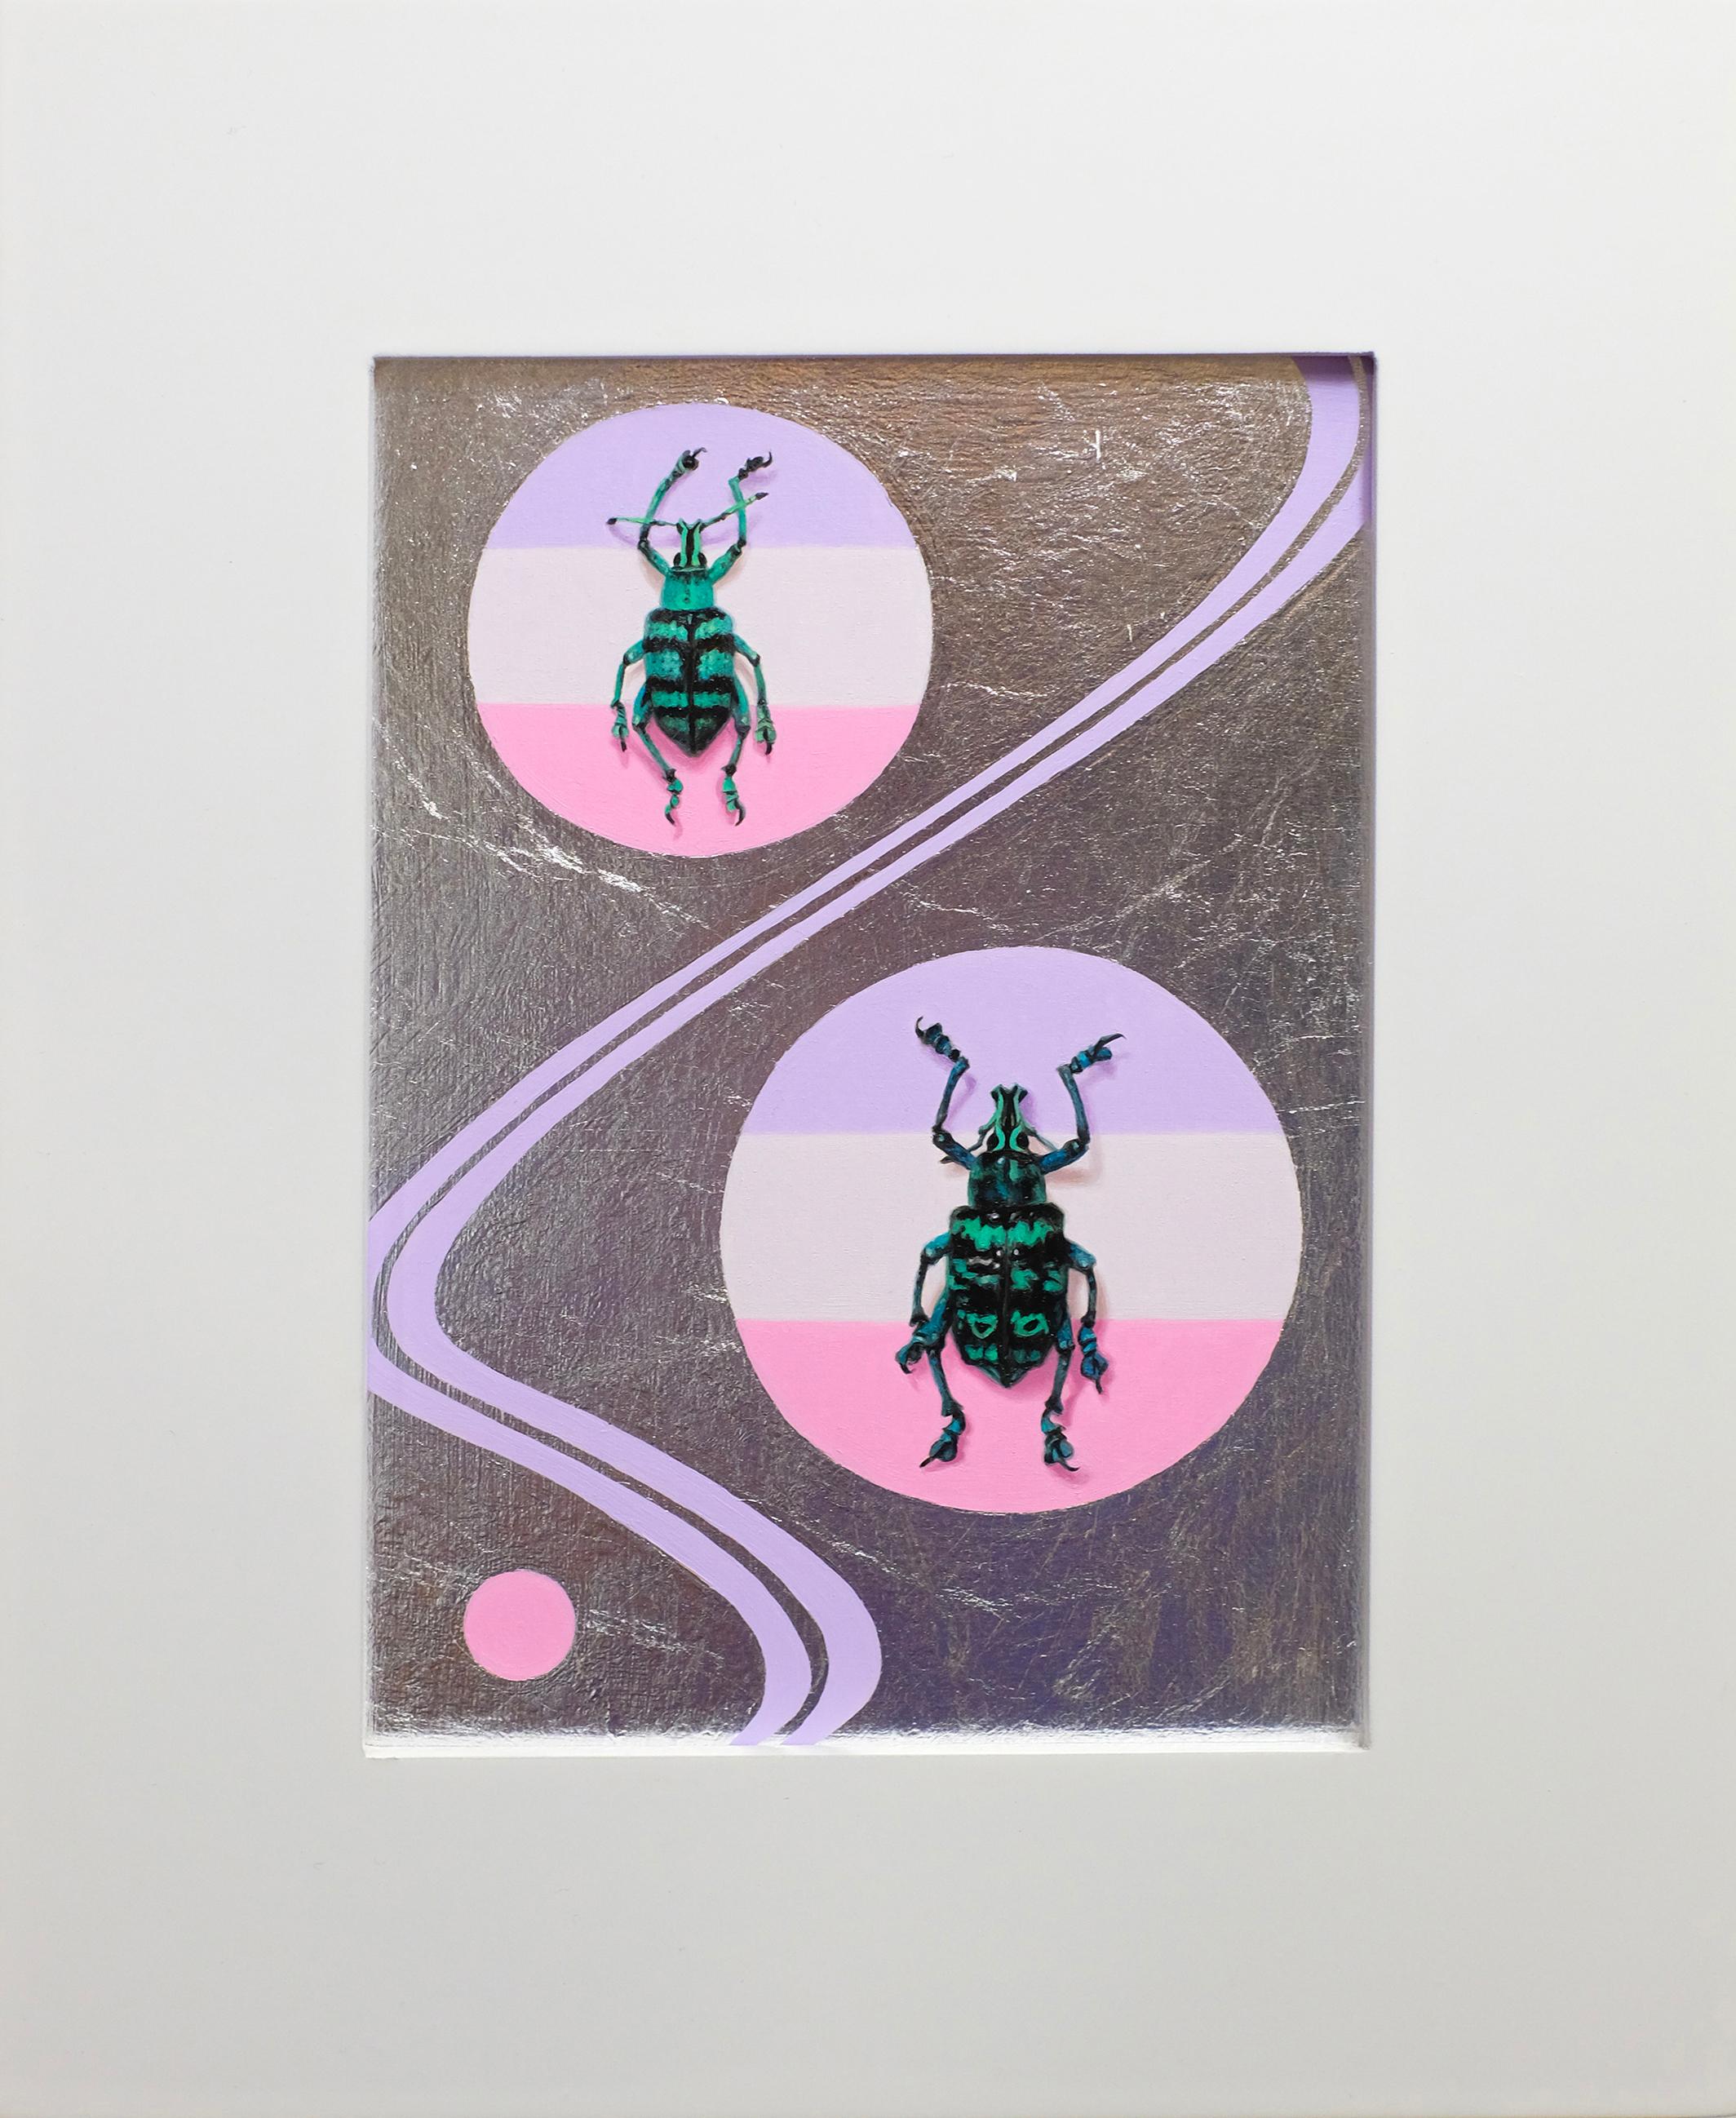 Eupholus Shoenherri
2019
Huile et feuille de métal sur panneau
5" x 7" sans cadre
8.25" x 8.25" encadré


Eupholus Shoenherri est une espèce de coléoptères de Nouvelle-Guinée. De nombreuses œuvres de l'artiste s'inscrivent dans la longue tradition